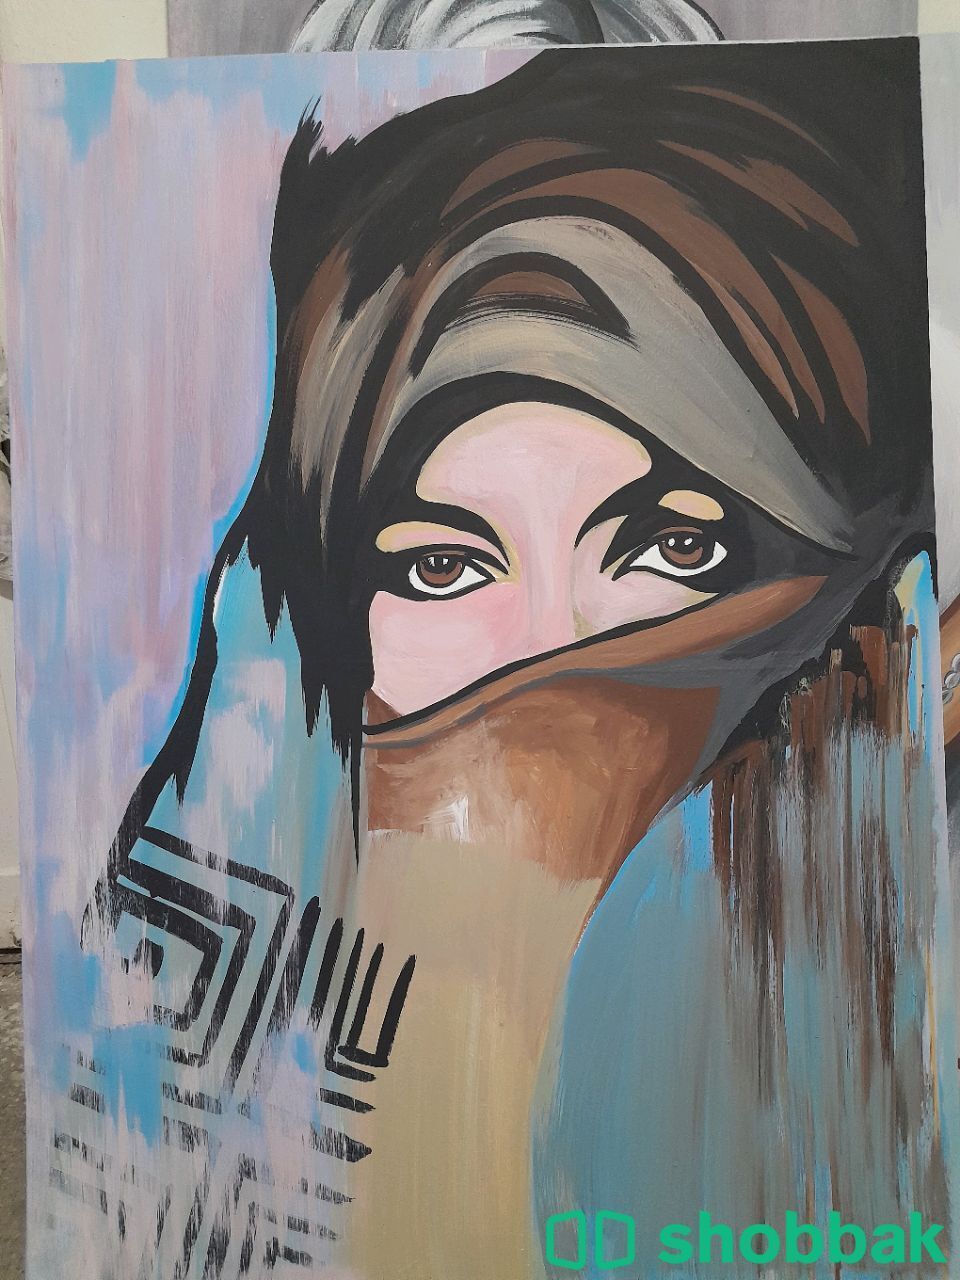 فنان تشكيلي لوحات كانفس وجدران  Shobbak Saudi Arabia